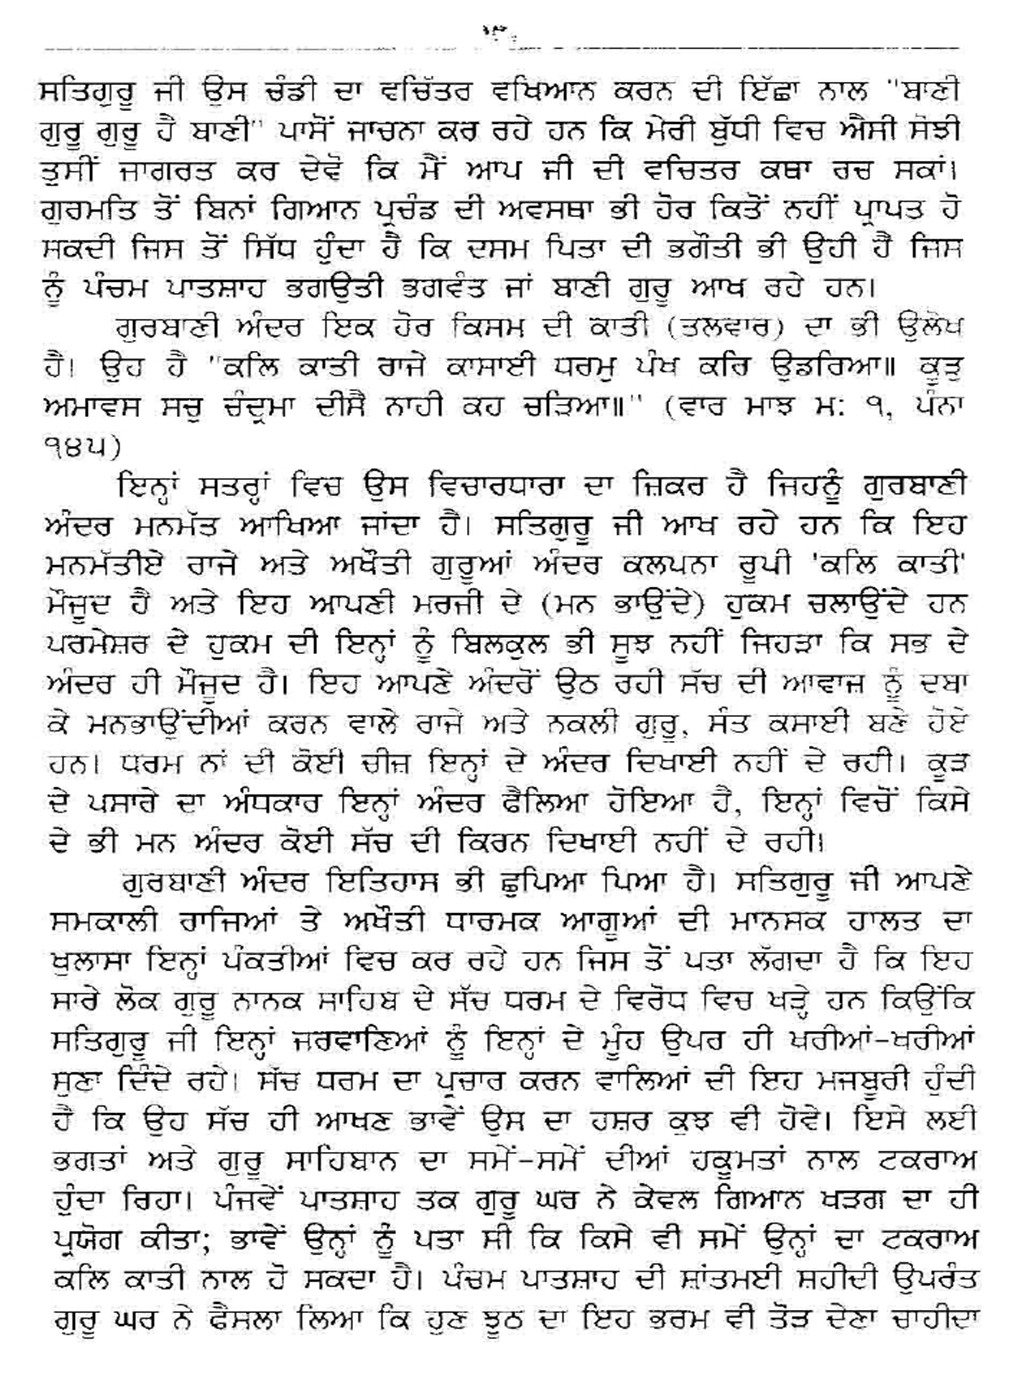 Meeri Peeri Di Asal Sword Gur Gyan Khadag (7).png